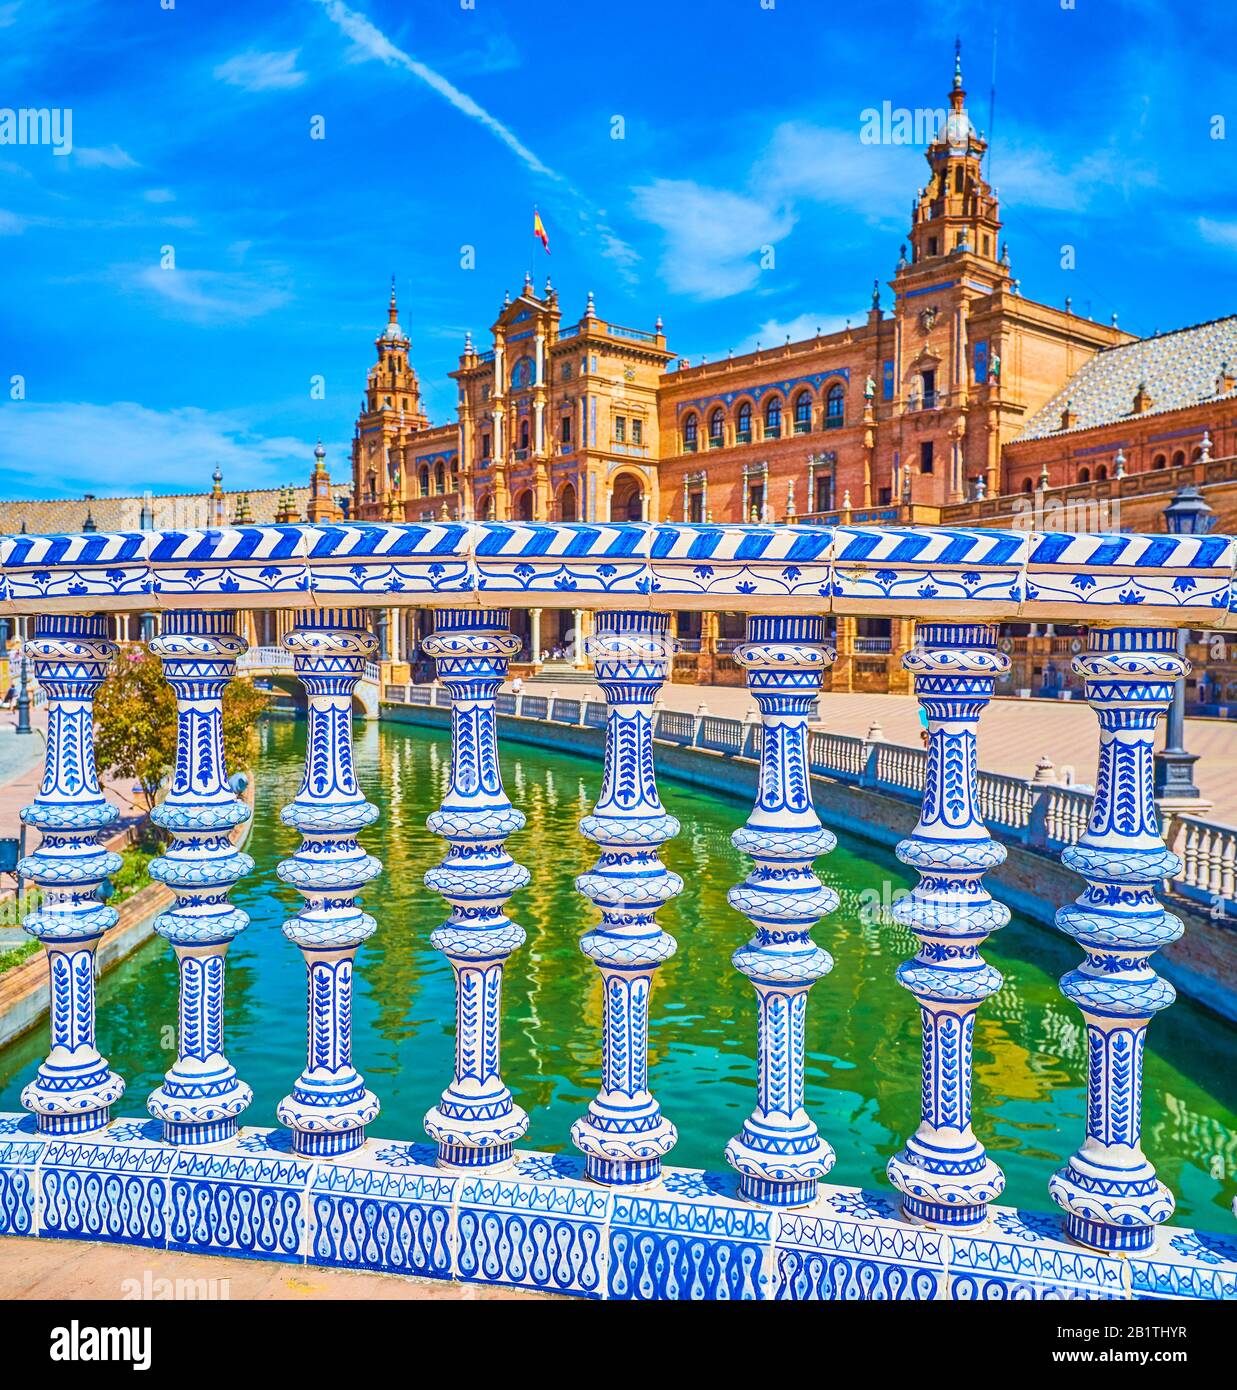 Plaza de Espana vanta splendide decorazioni in ceramica in stile andaluso, Siviglia, Spagna Foto Stock